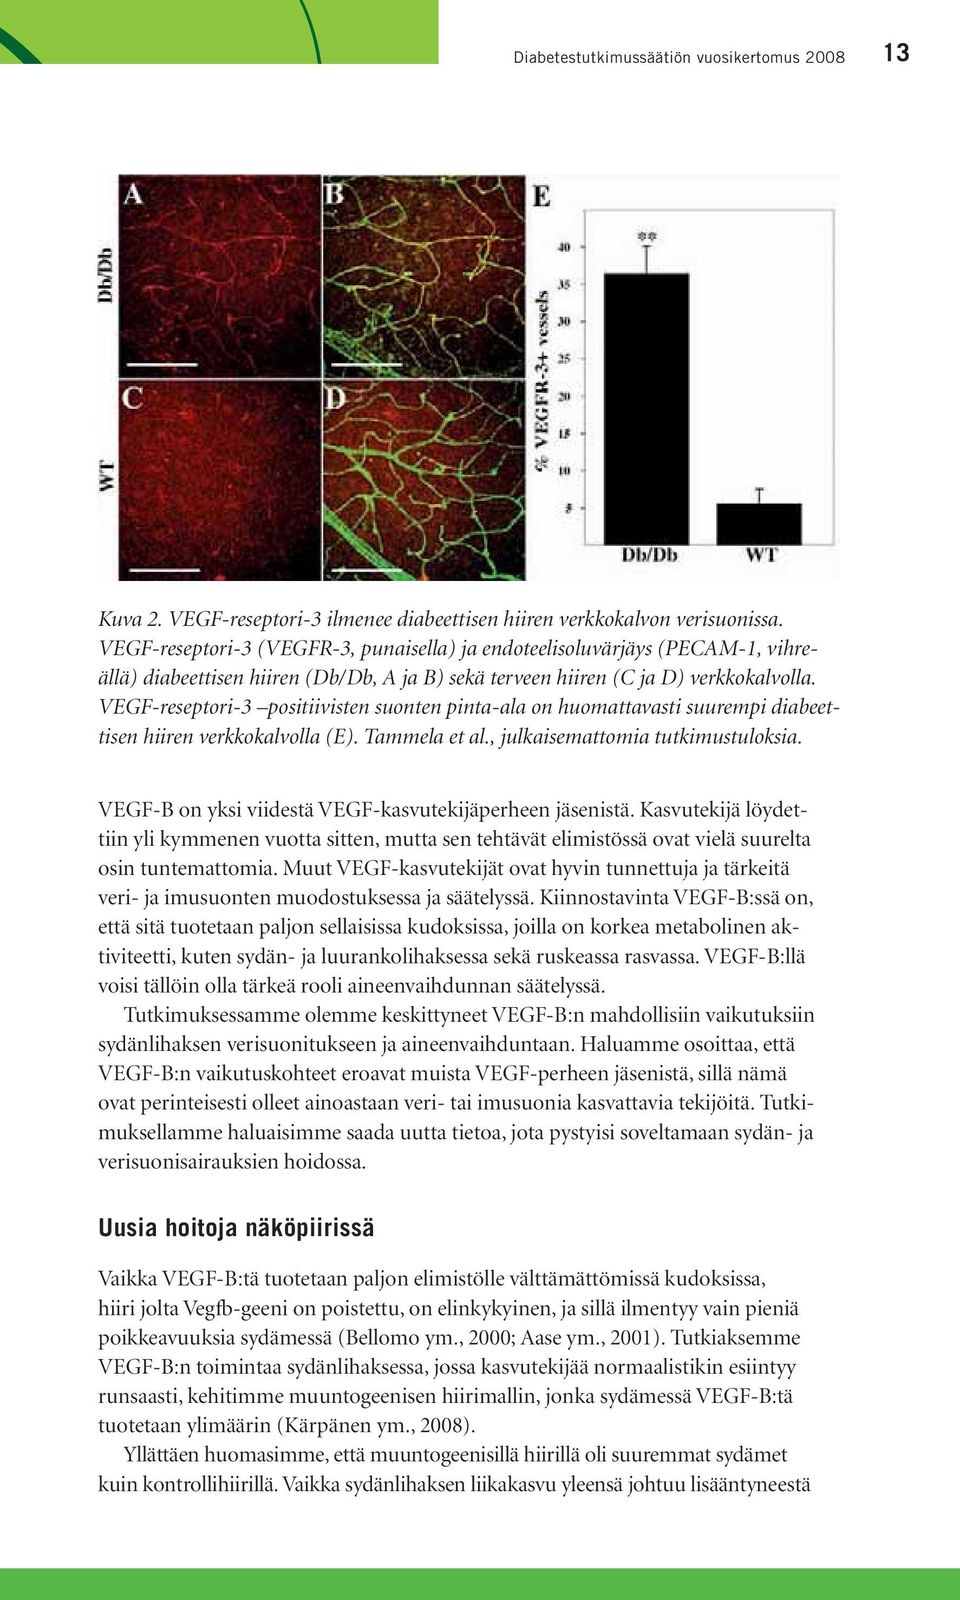 VEGF-reseptori-3 positiivisten suonten pinta-ala on huomattavasti suurempi diabeettisen hiiren verkkokalvolla (E). Tammela et al., julkaisemattomia tutkimustuloksia.